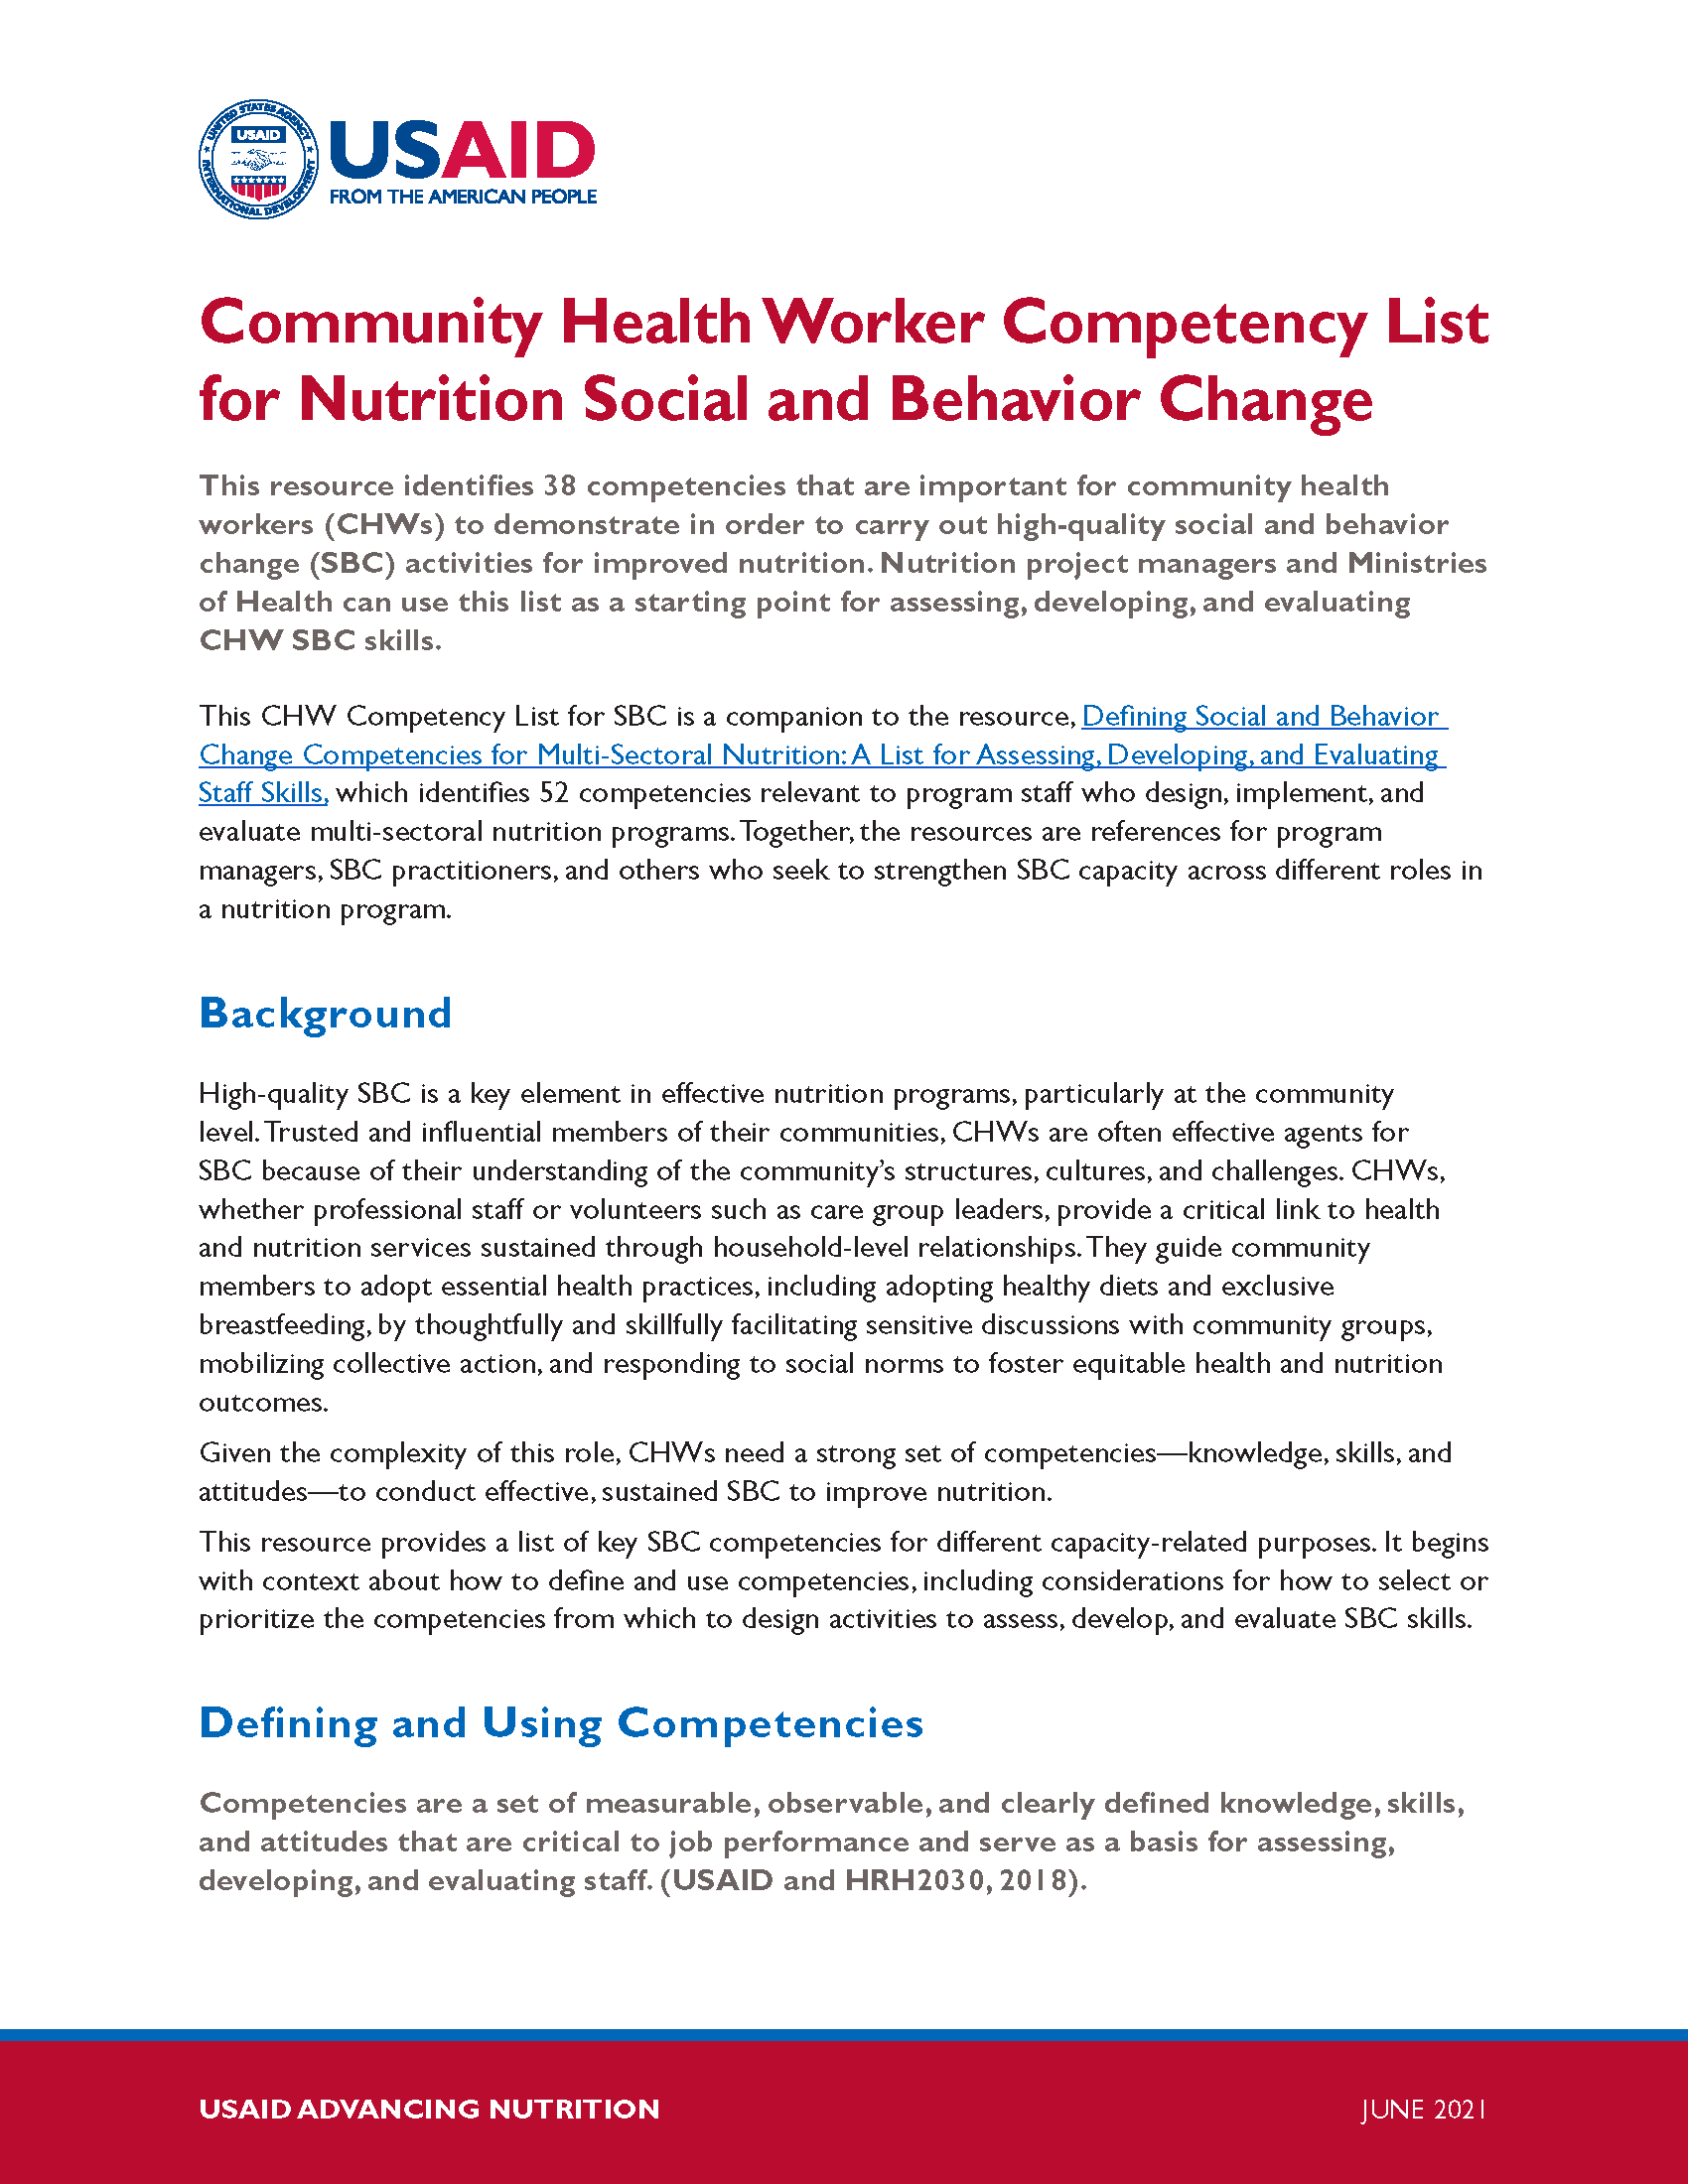 Page de couverture de la Liste de compétences des agents de santé communautaire en matière de nutrition, de changement social et de comportement